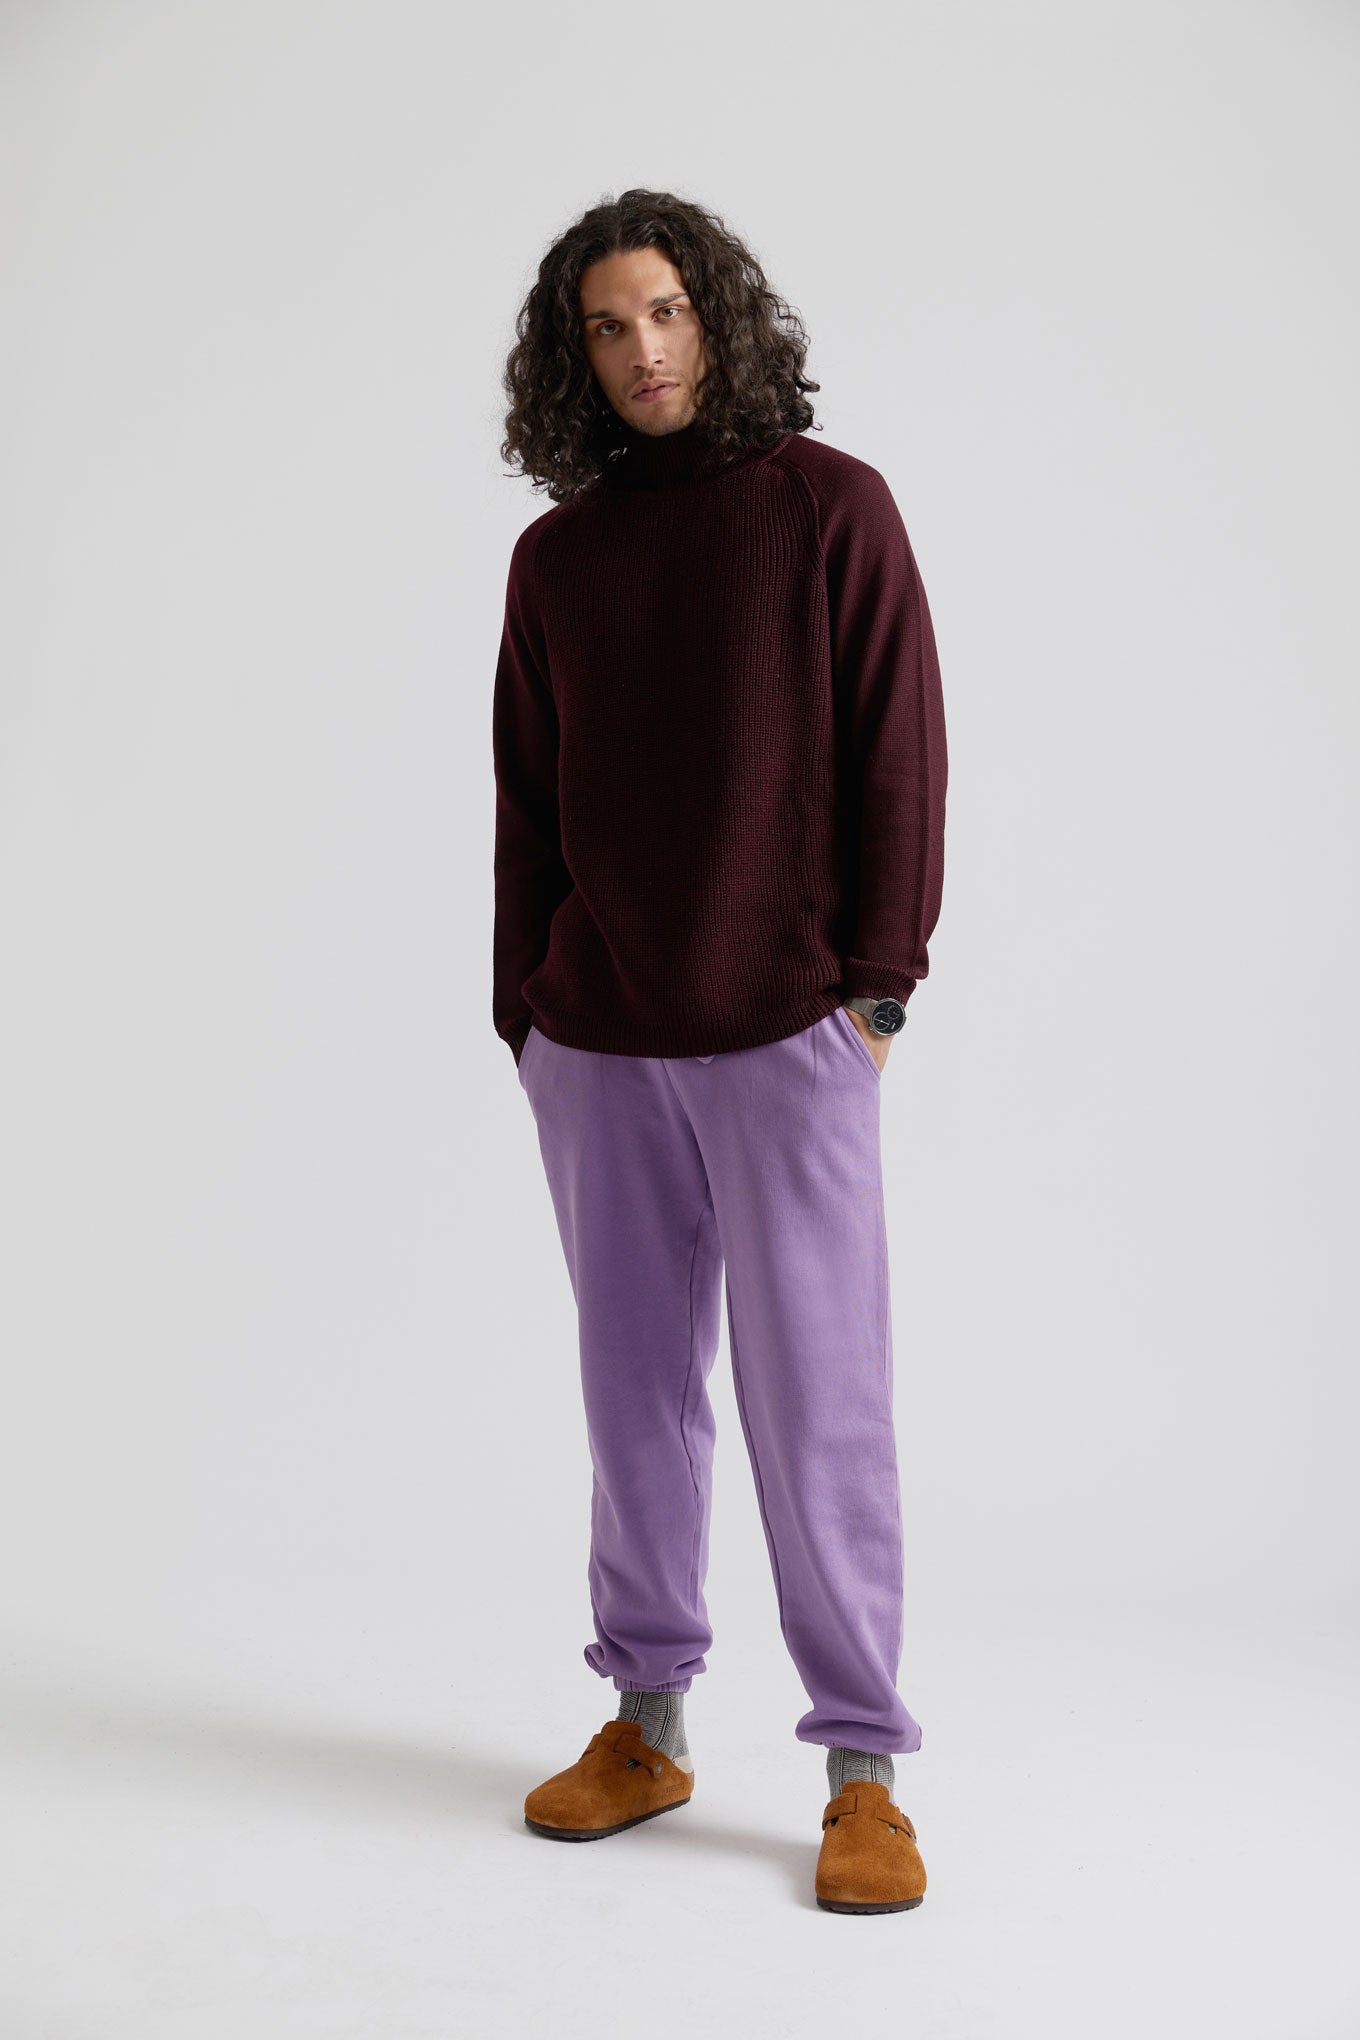 Pantalon de jogging ADAM violet en coton 100% biologique de Komodo 